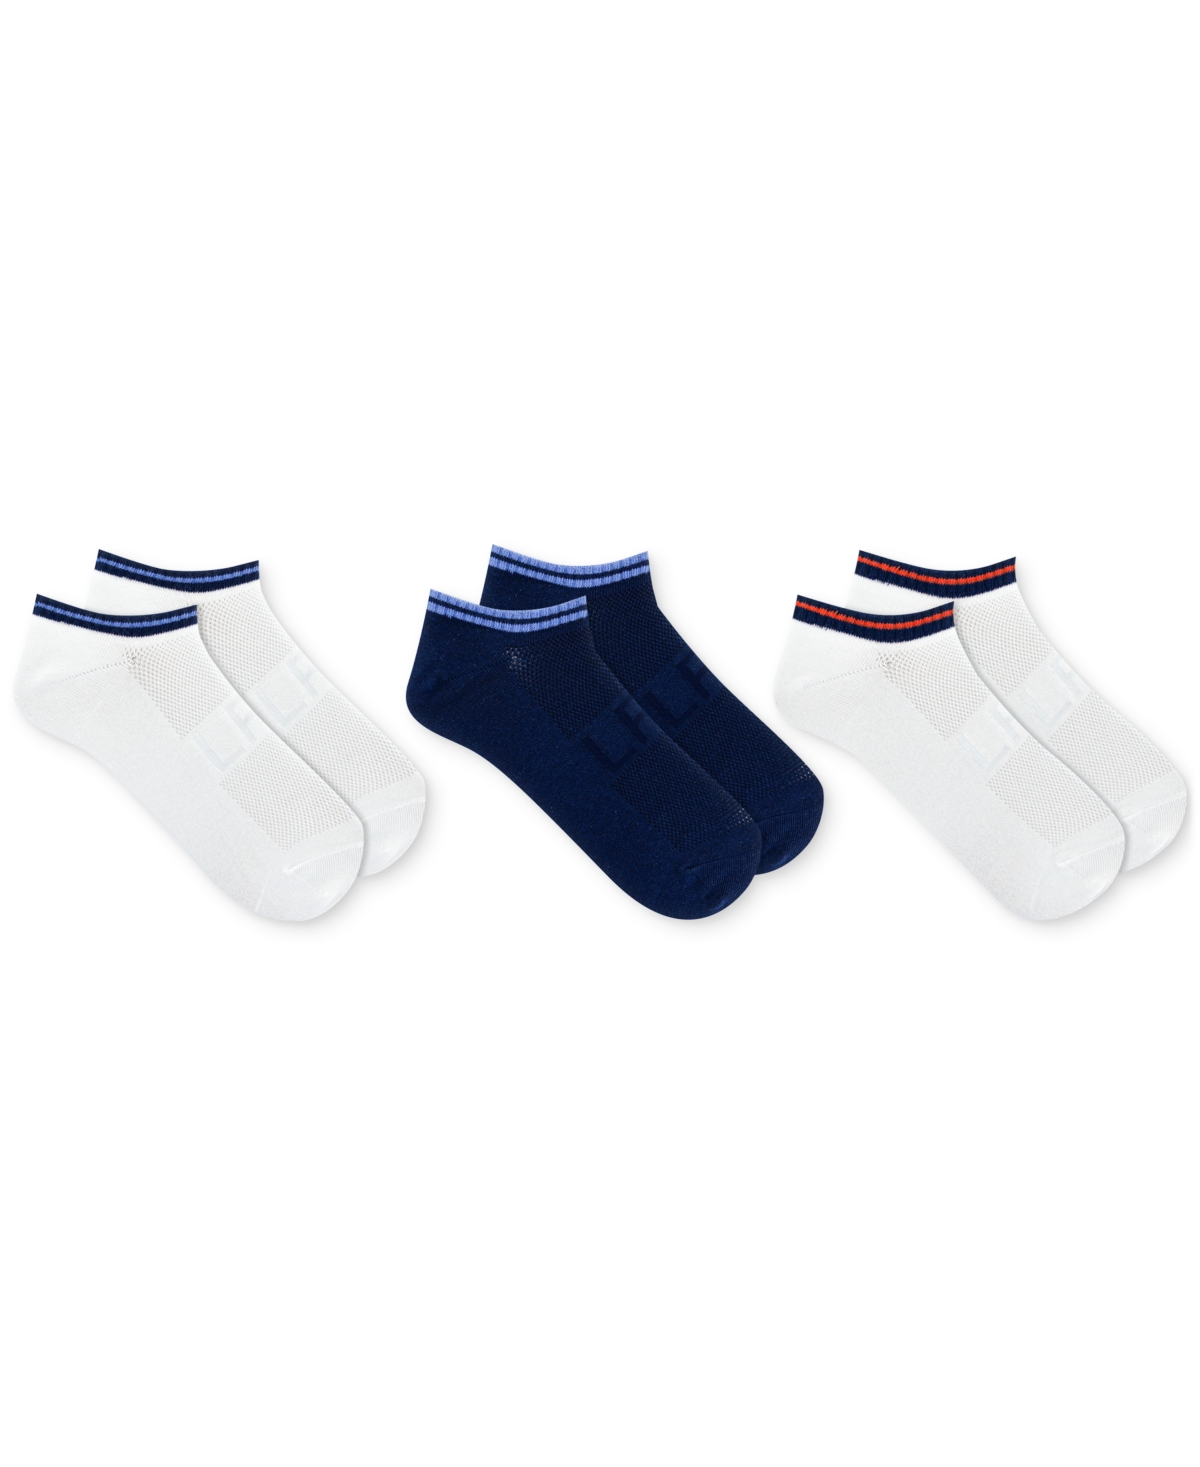 Women's 3-Pk. Striped Low Cut Socks - White Assorted